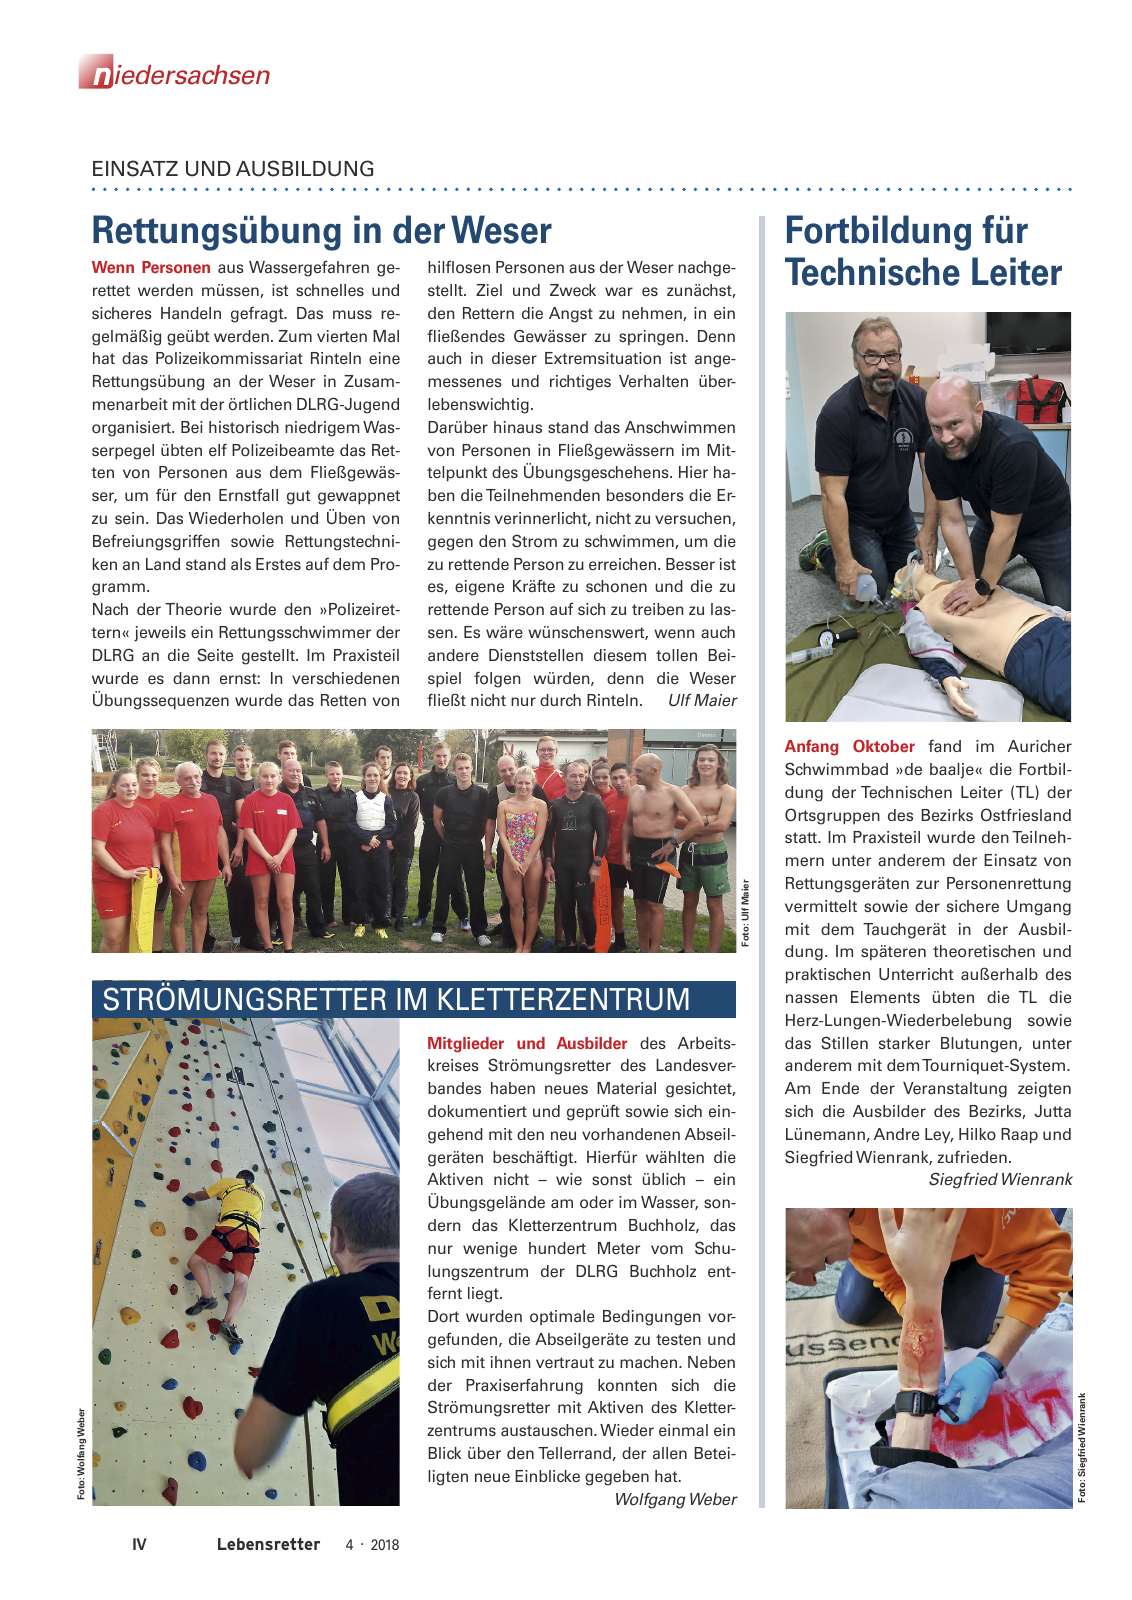 Vorschau Lebensretter 4/2018 - Regionalausgabe Niedersachsen Seite 6